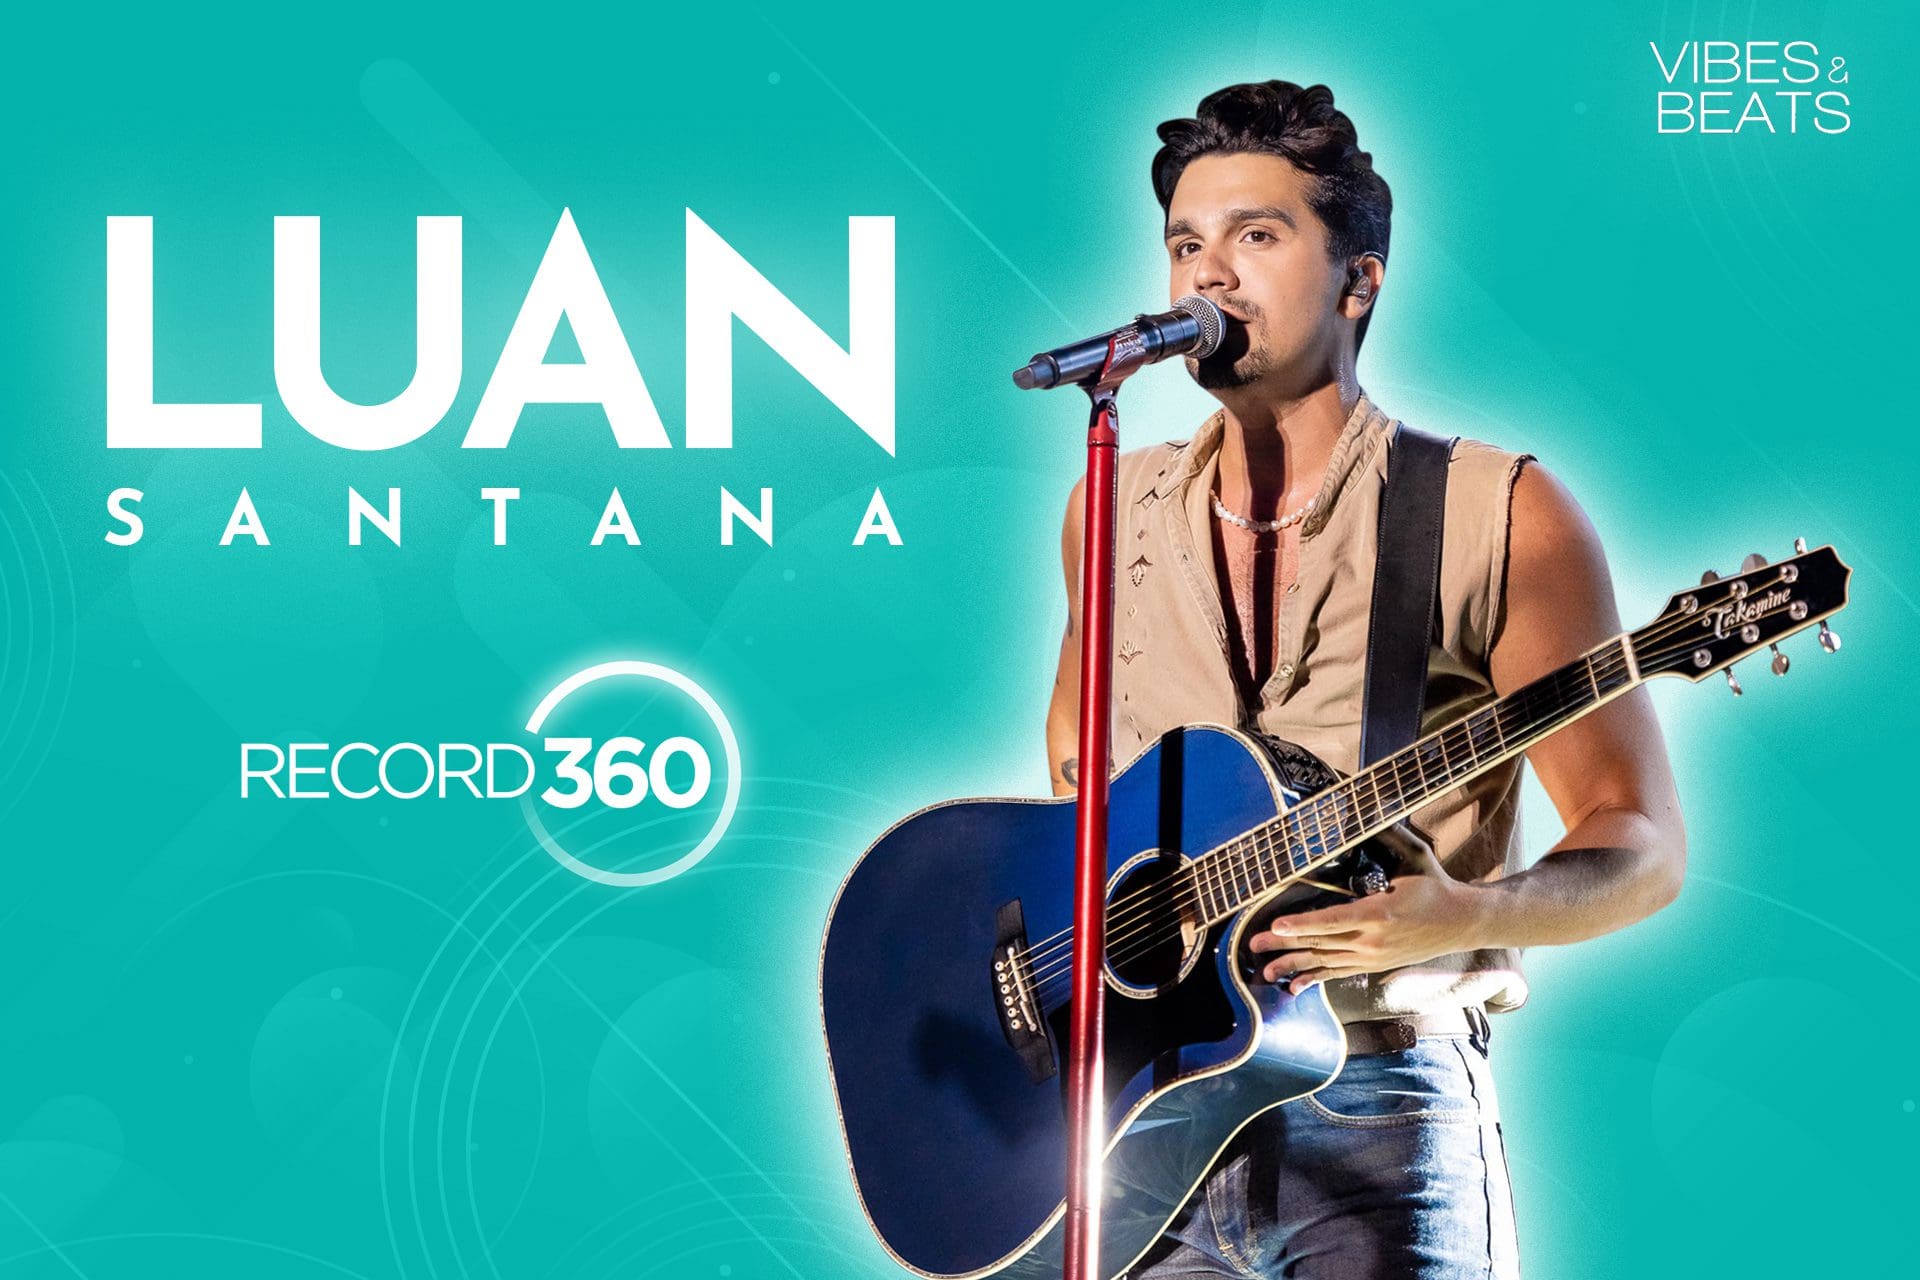 Vá ao concerto de Luan Santana com a Record TV